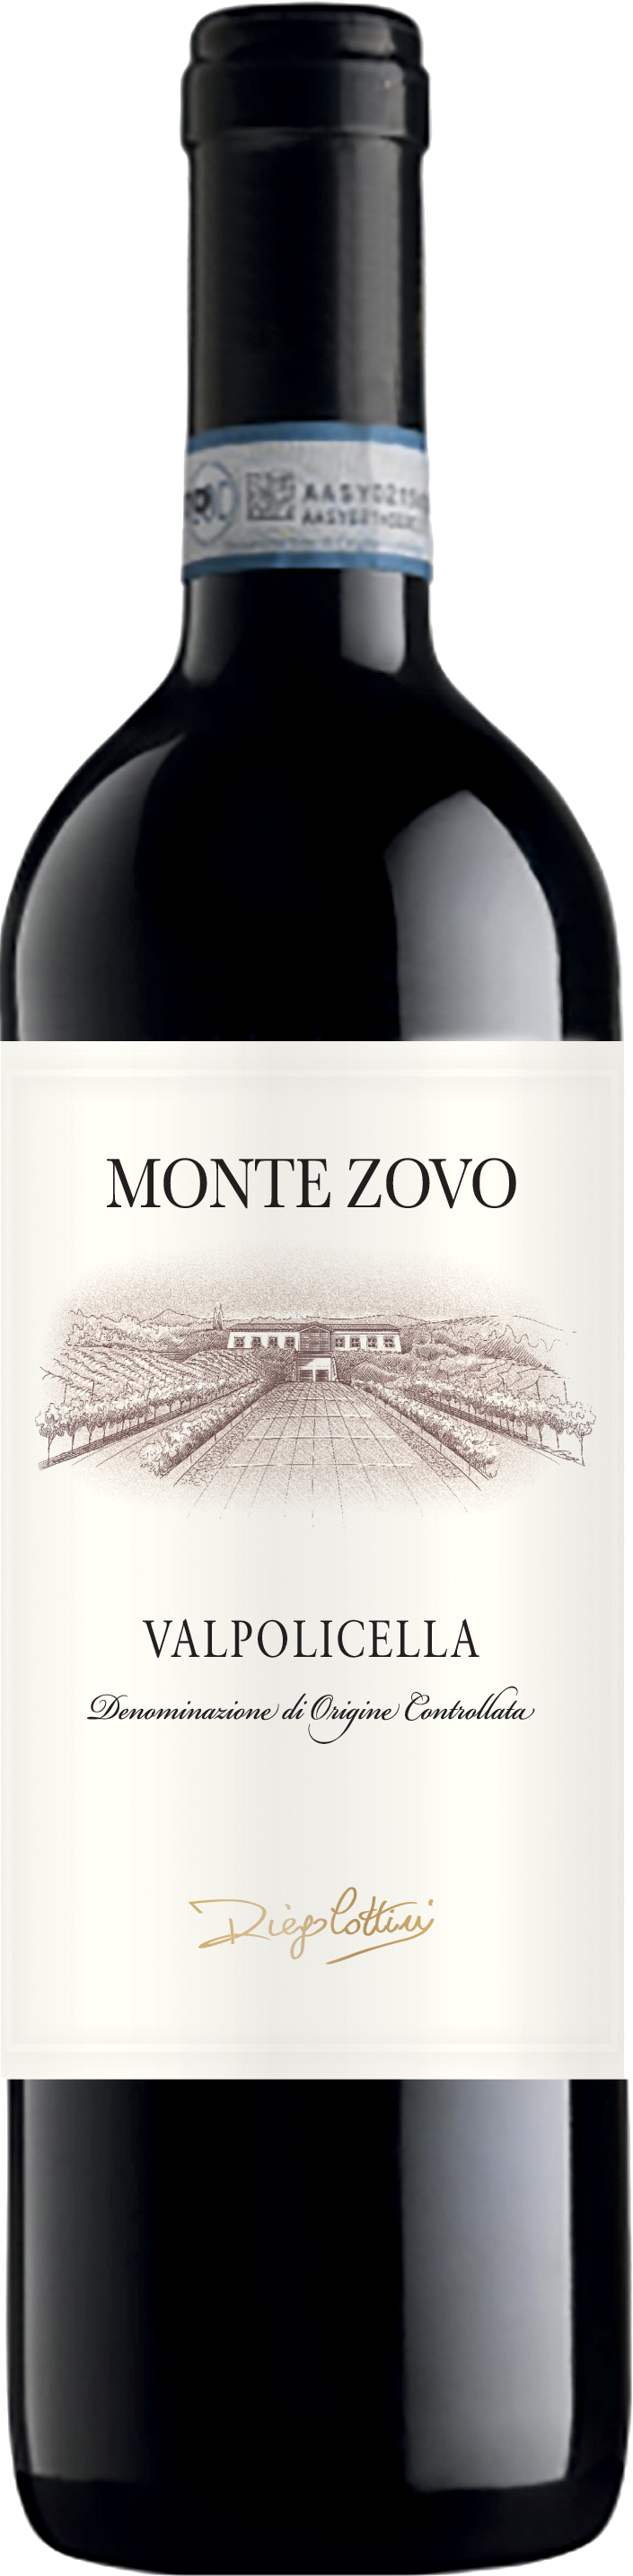 Monte Zovo - Valpolicella DOC